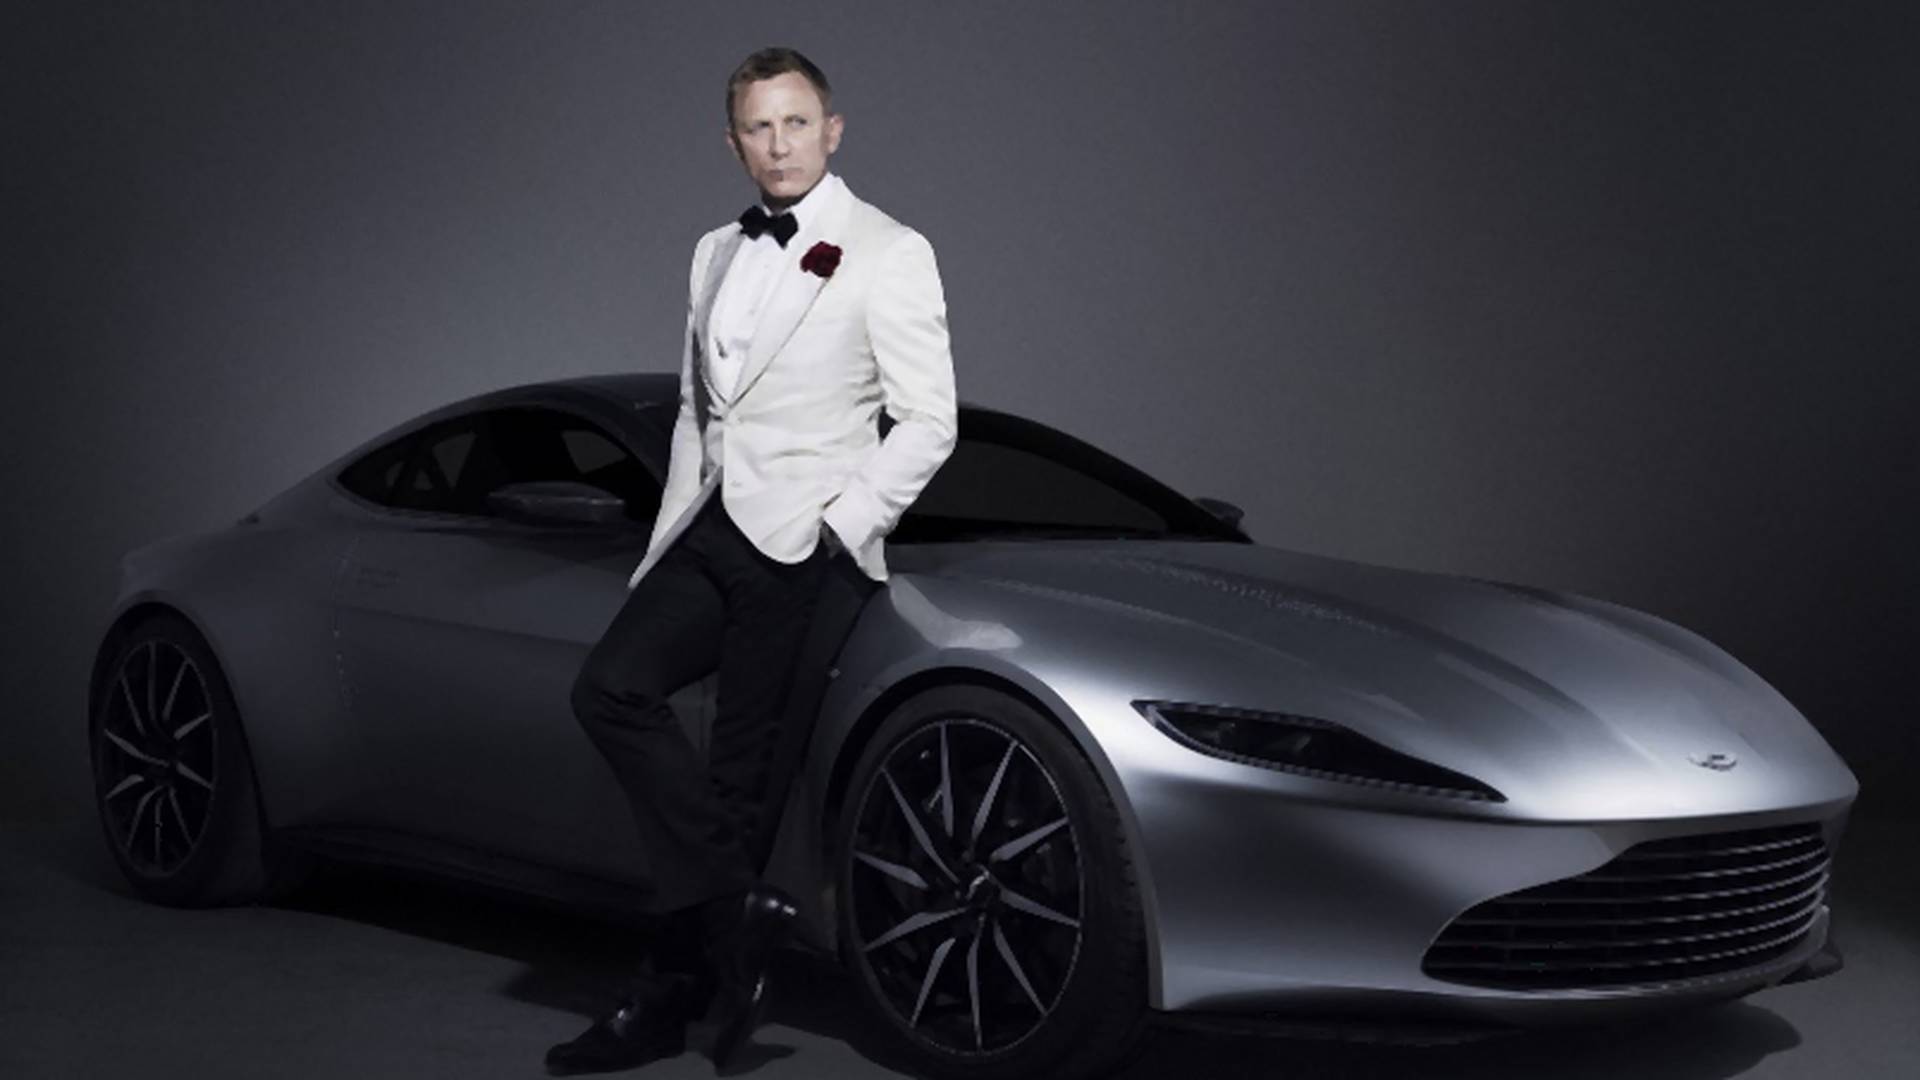 Kiderült, milyen nemzetiségű lesz a következő Mr. Bond